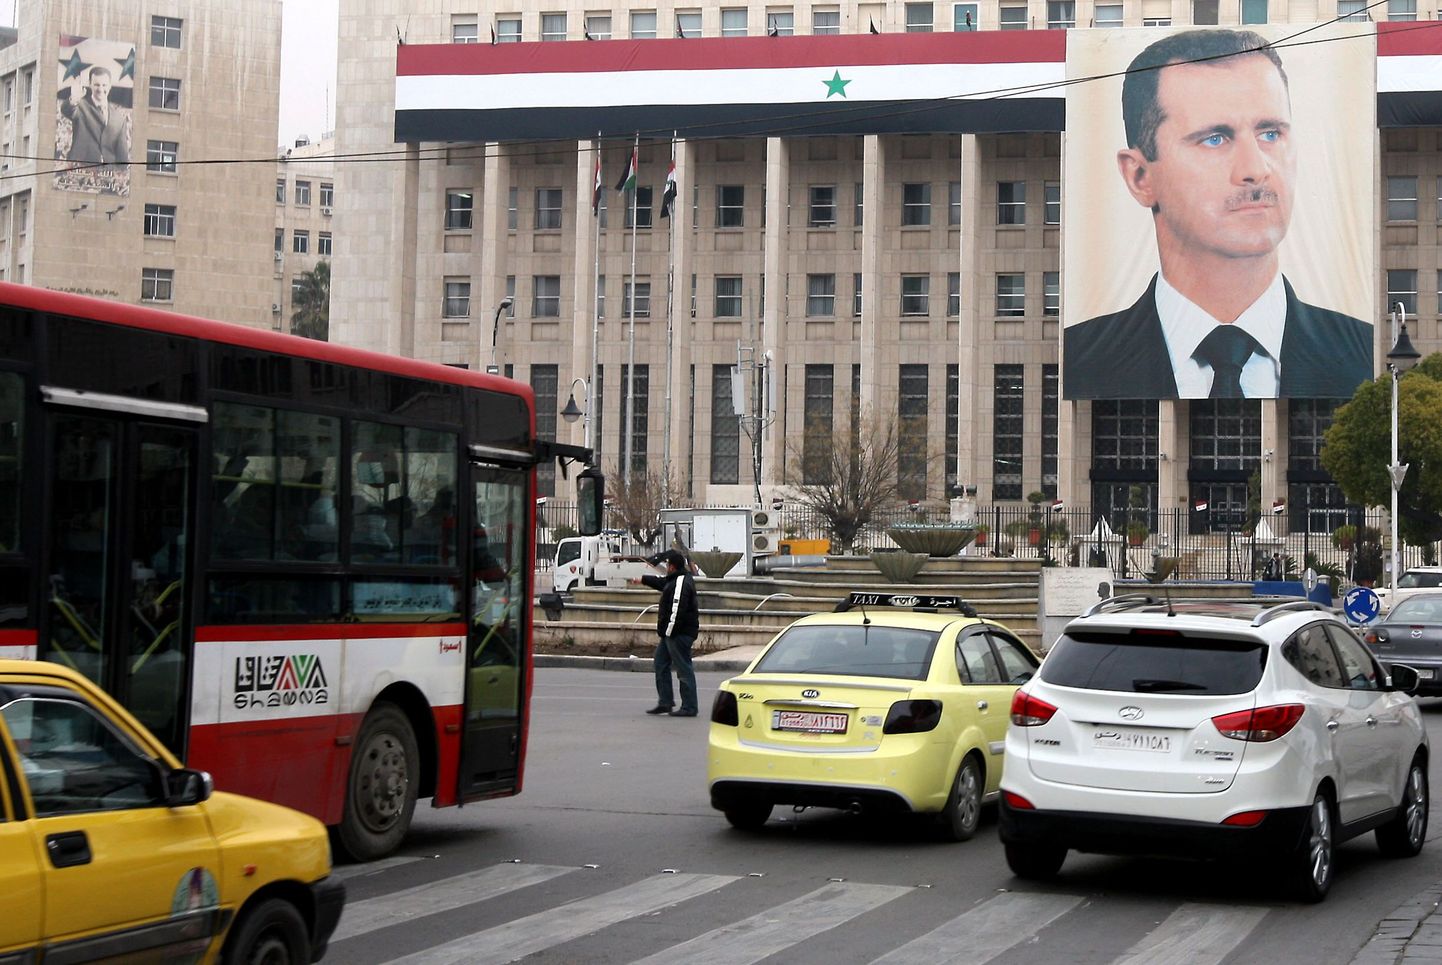 Süüria presidendi Bashar al-Assadplakat Damaskuses.